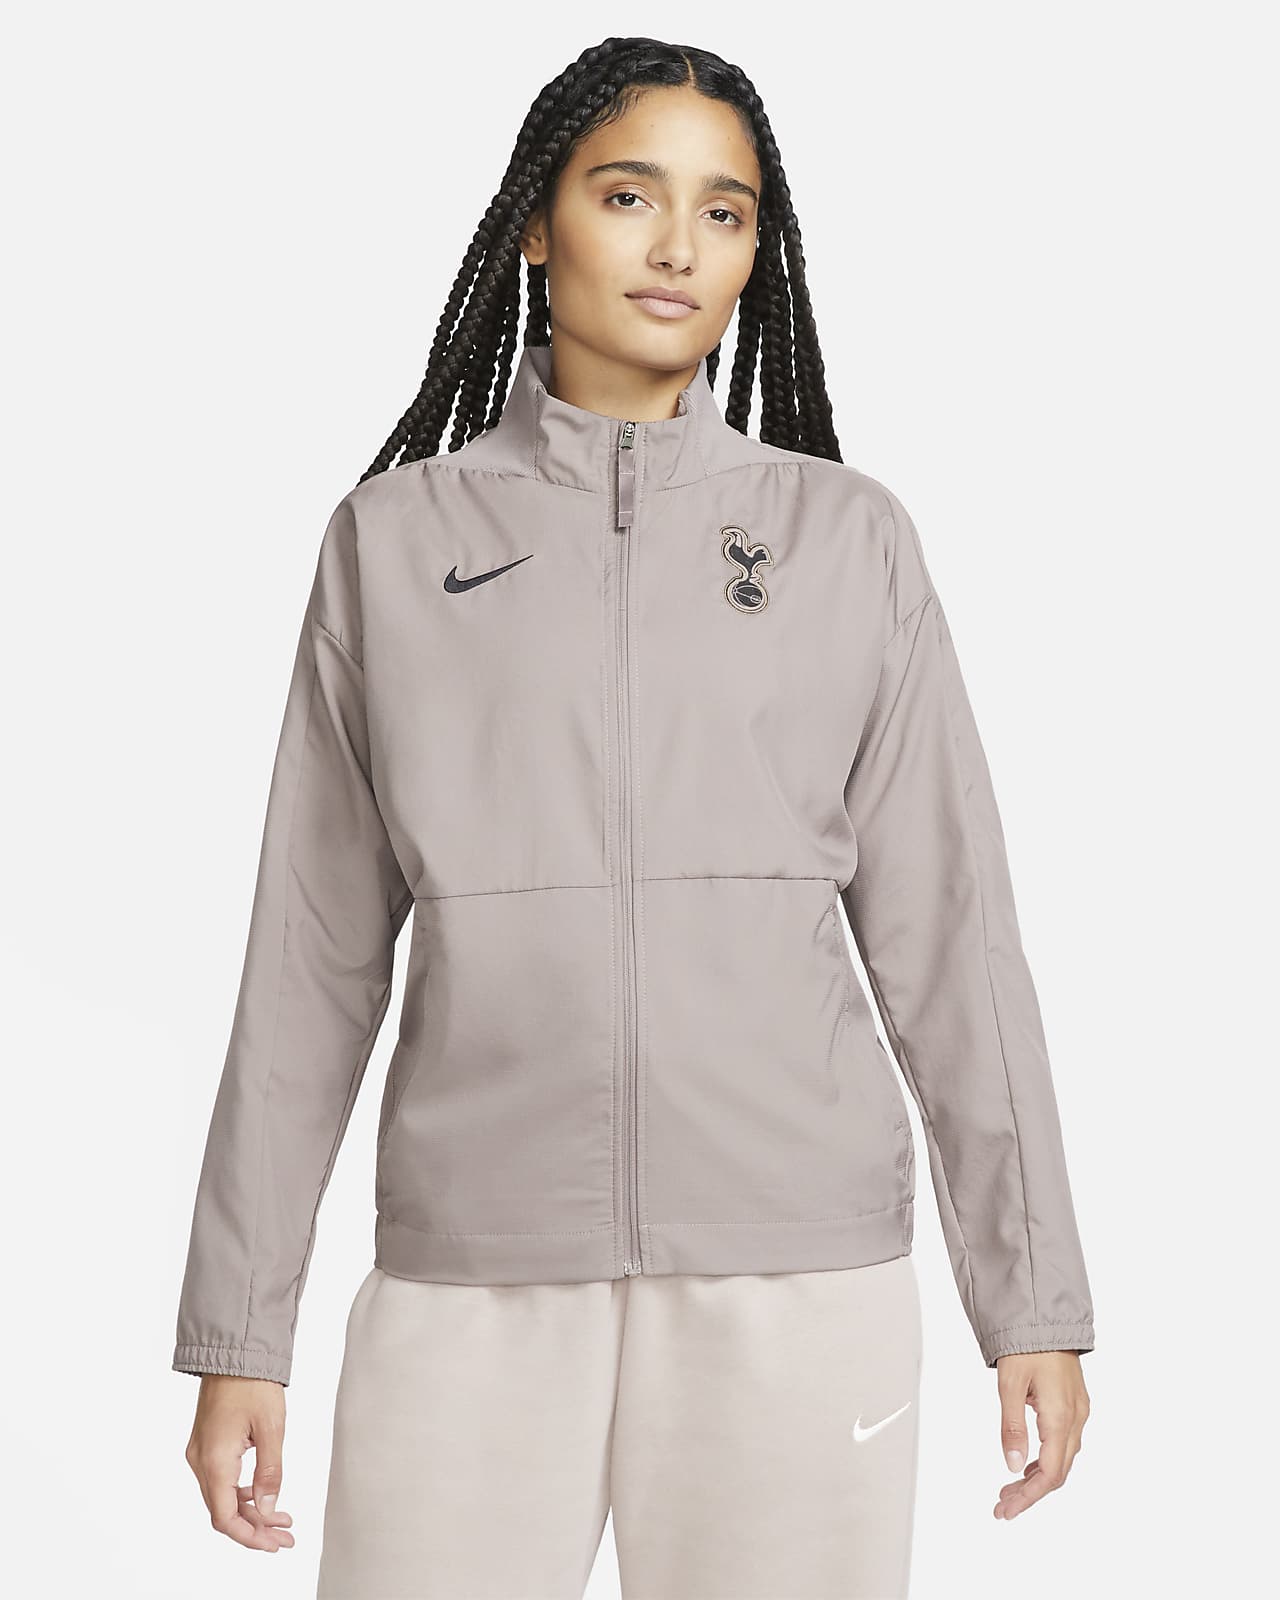 Γυναικείο ποδοσφαιρικό υφαντό τζάκετ Nike Dri-FIT εναλλακτικής εμφάνισης Τότεναμ